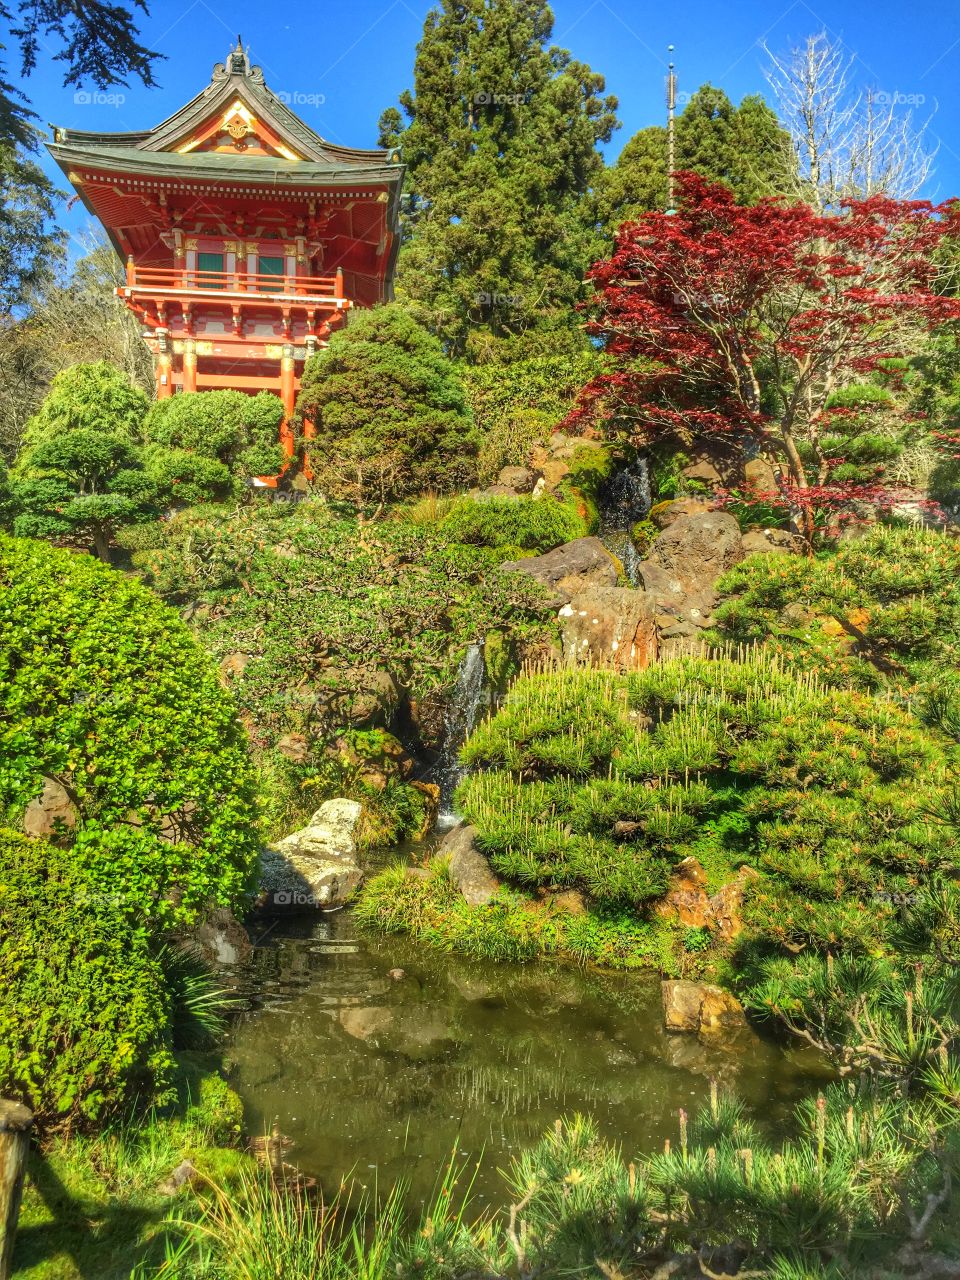 San Francisco Japanese Tea garden